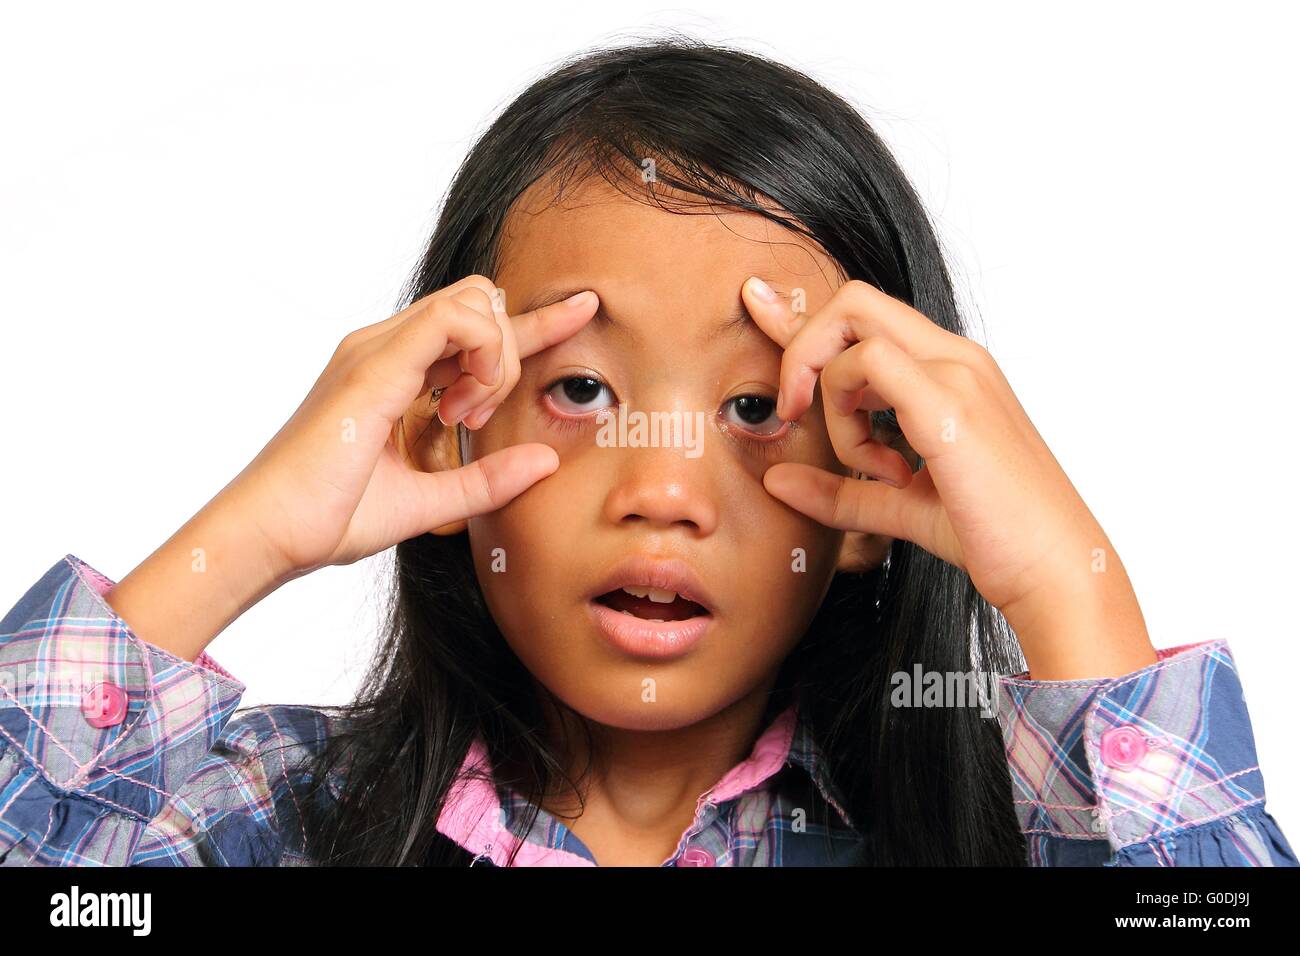 Petite fille avait l'air fatigué et pousser les yeux ouverts avec son doigt isolated on white Banque D'Images